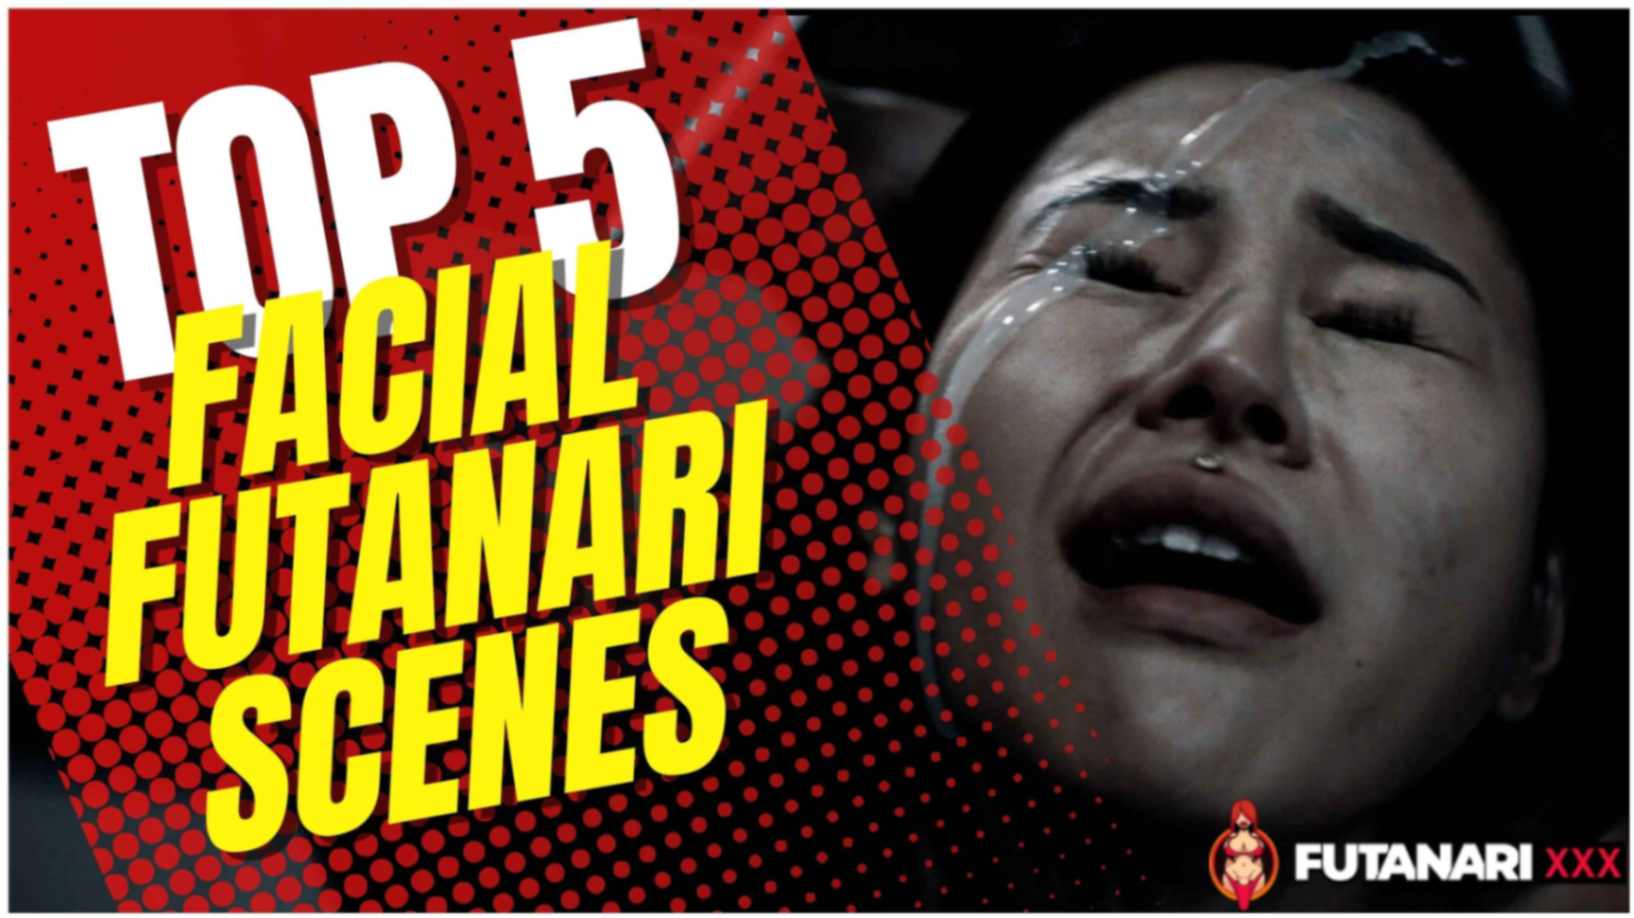 Top 5 Futanari scenes that end with a facial